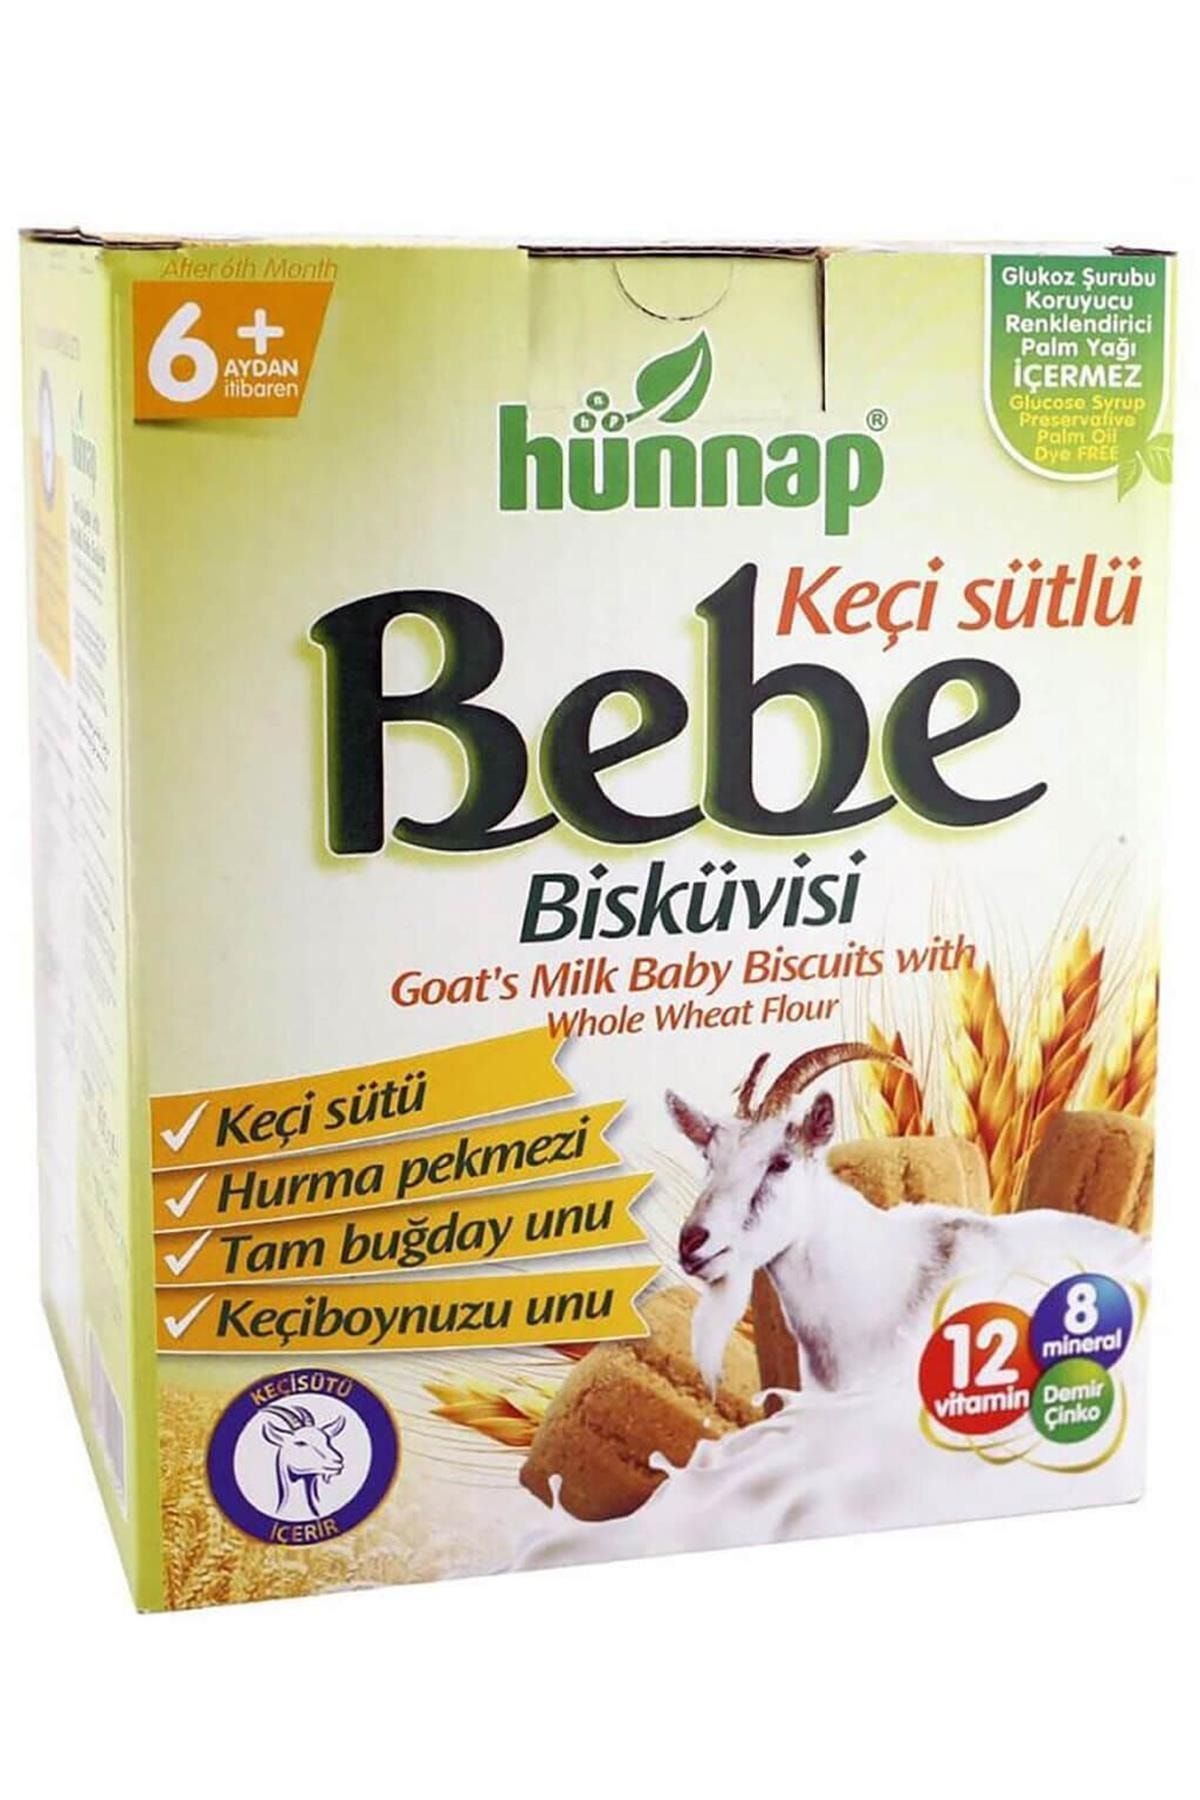 Hünnap Hunnap Bebe Bisküvisi 400 Gr Kecı Sutlu Keçi Sütlü 400 Gr Kategori: Kaşık Maması